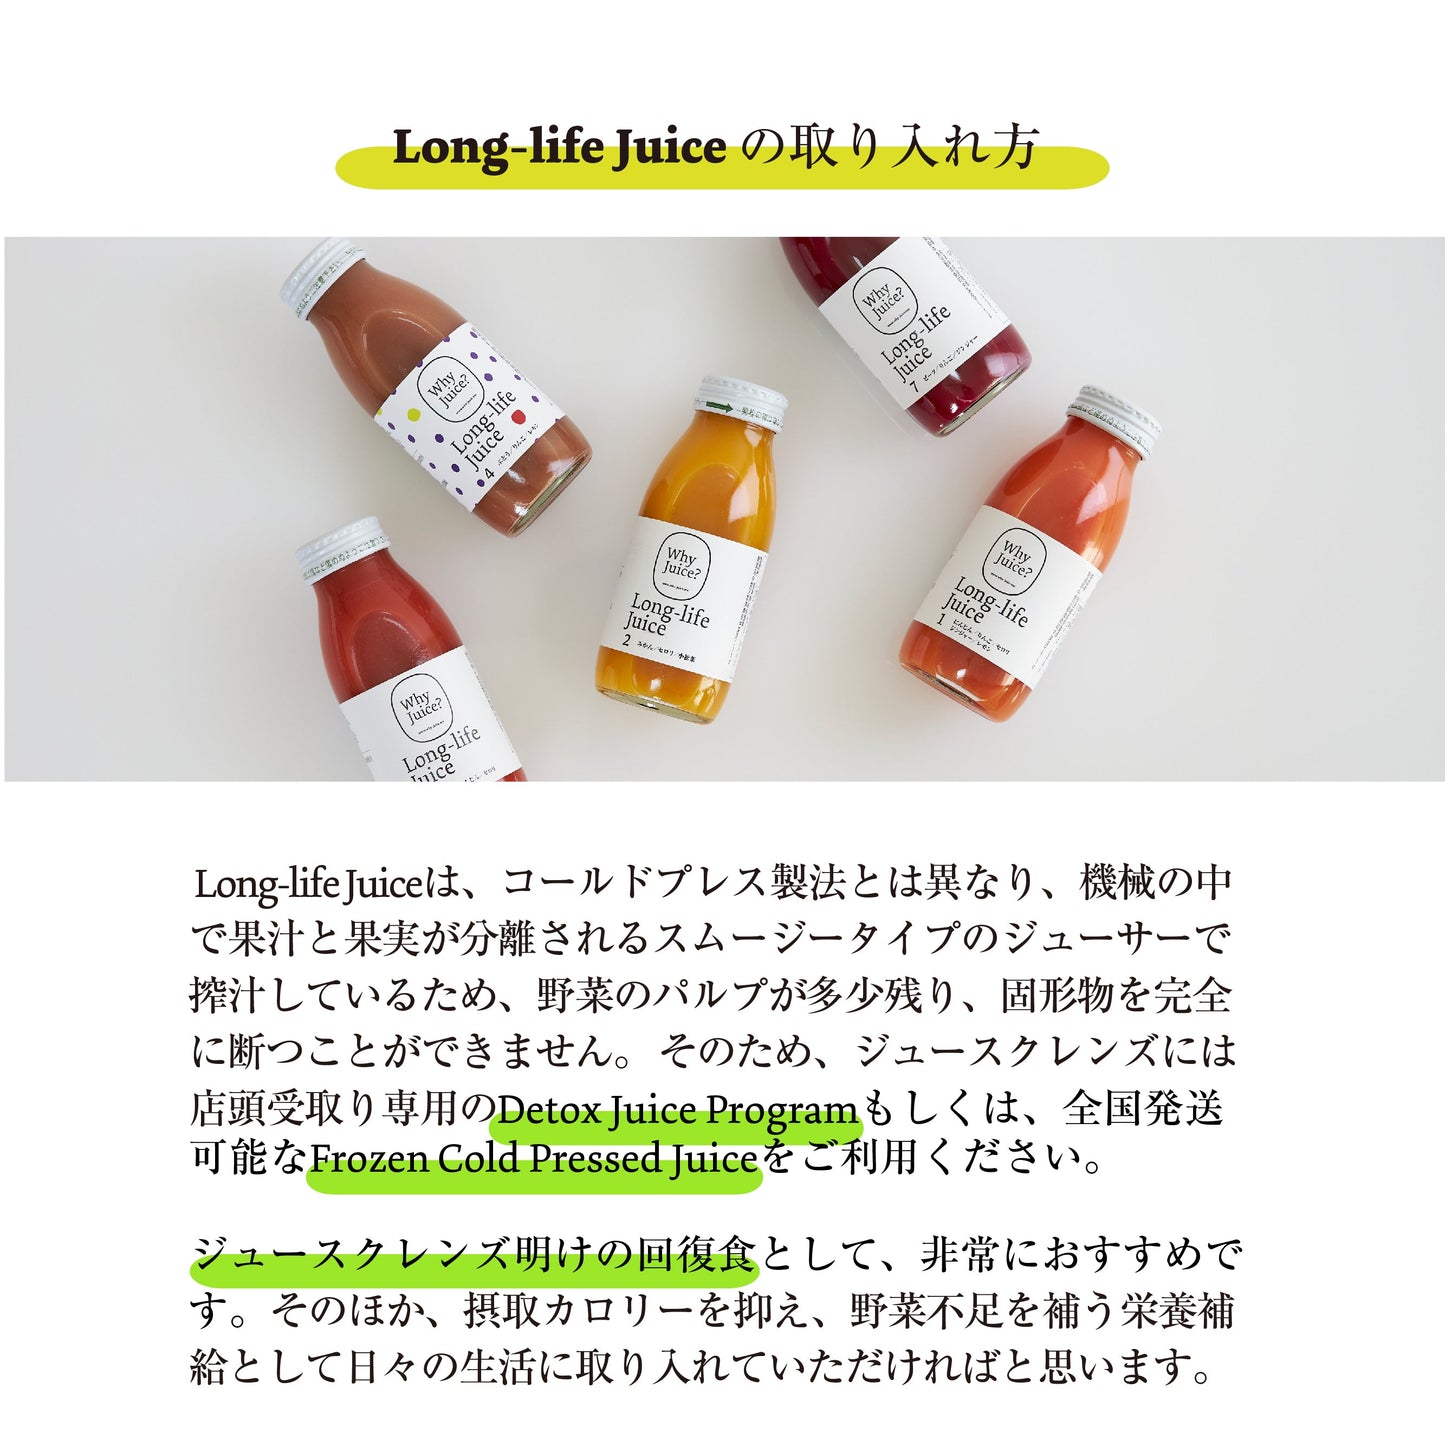 【無添加ジュース】Long-life Juice 6本ギフトボックス(お野菜たっぷりセット)